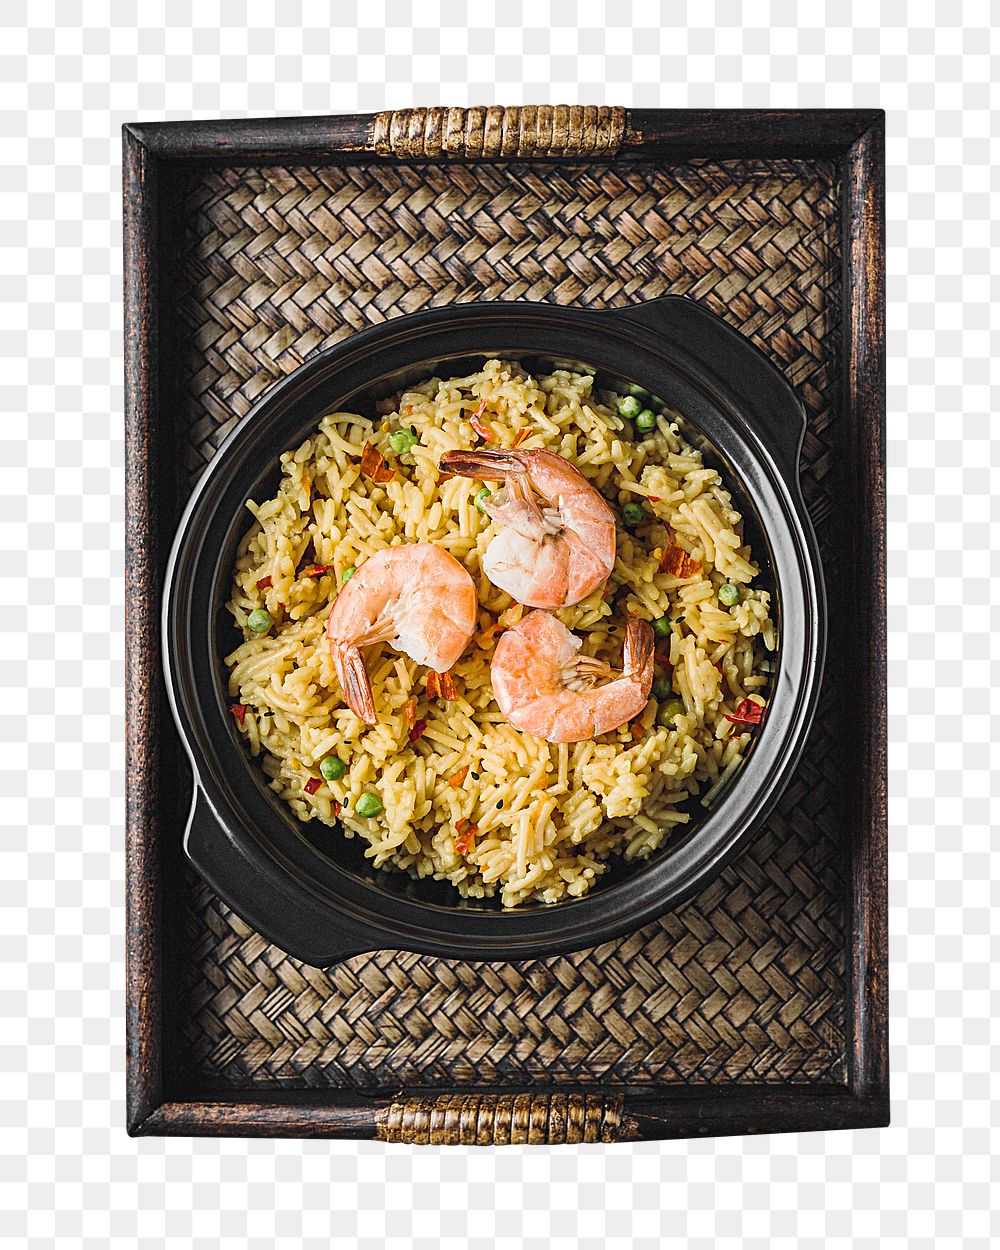 Shrimp fried rice png sticker, transparent background